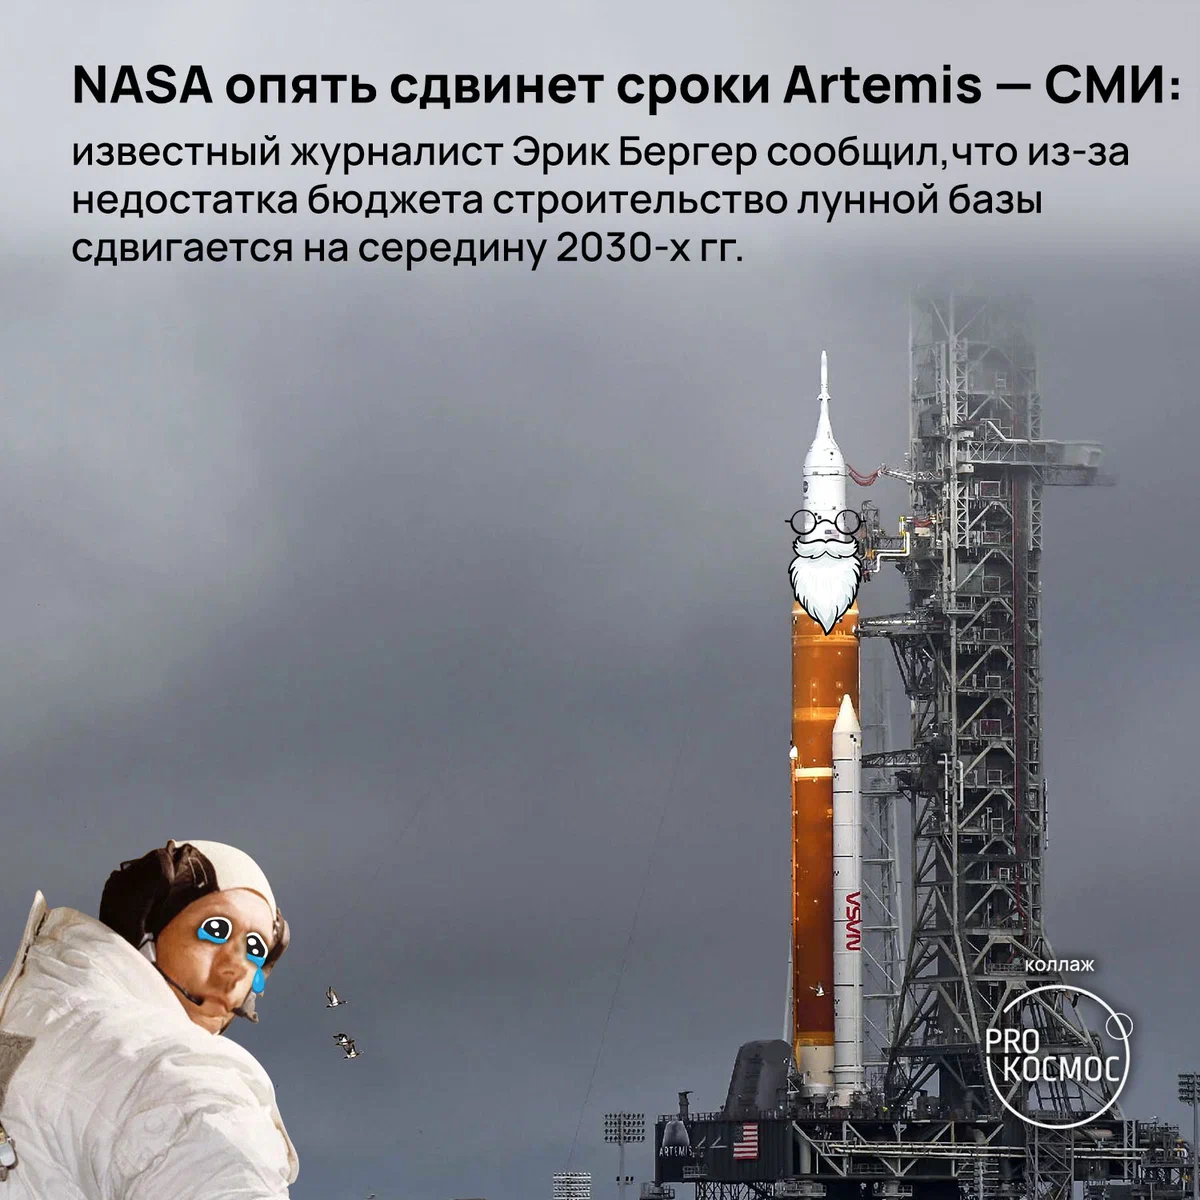 NASA опять сдвинет сроки Artemis—СМИ: ...строительство лунной базы сдвигается на середину 2030-х гг height=1200px width=1200px